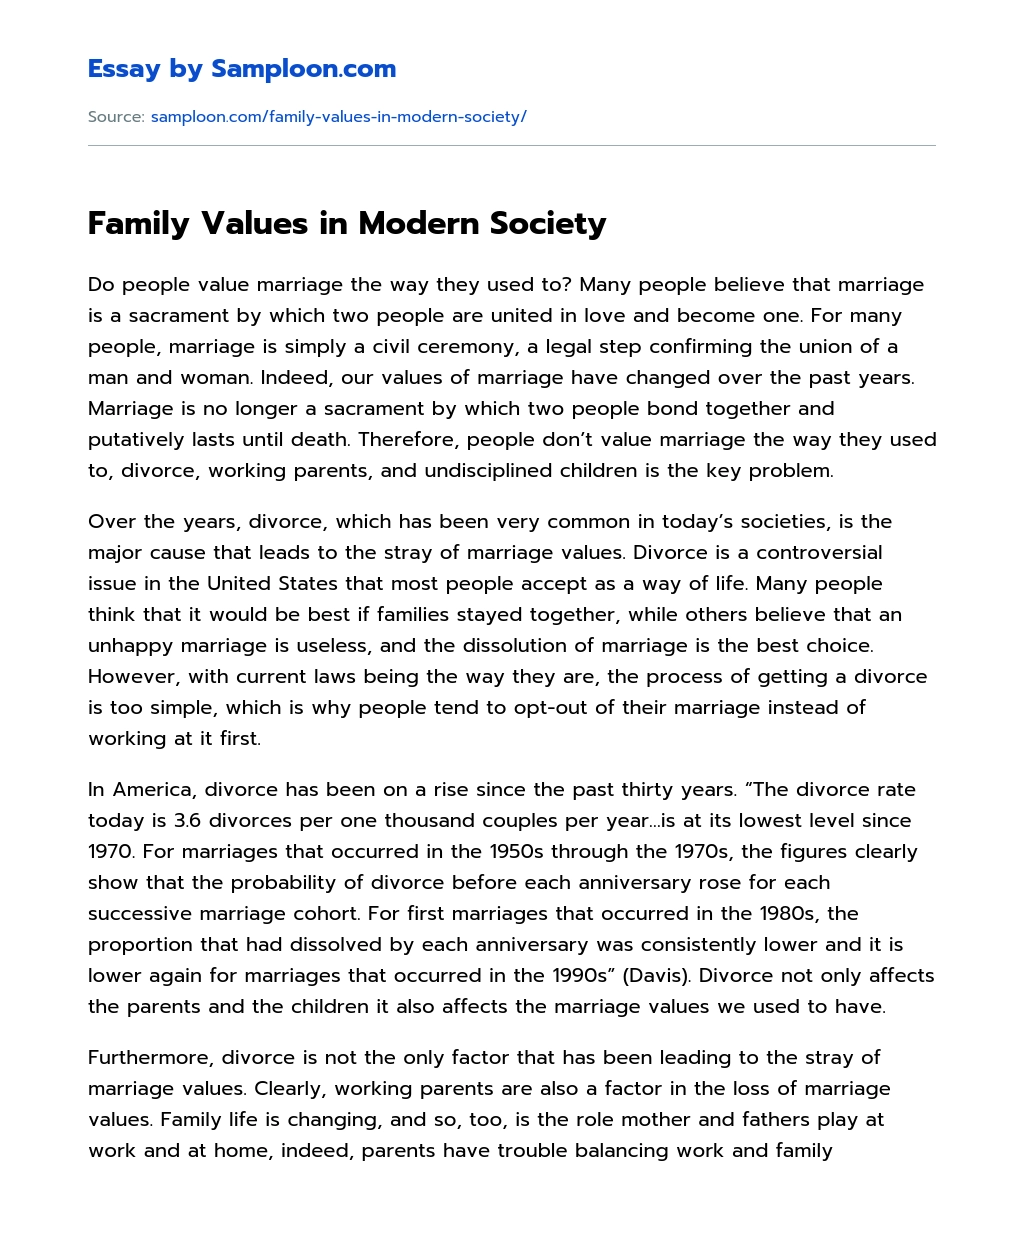 Family Values in Modern Society essay